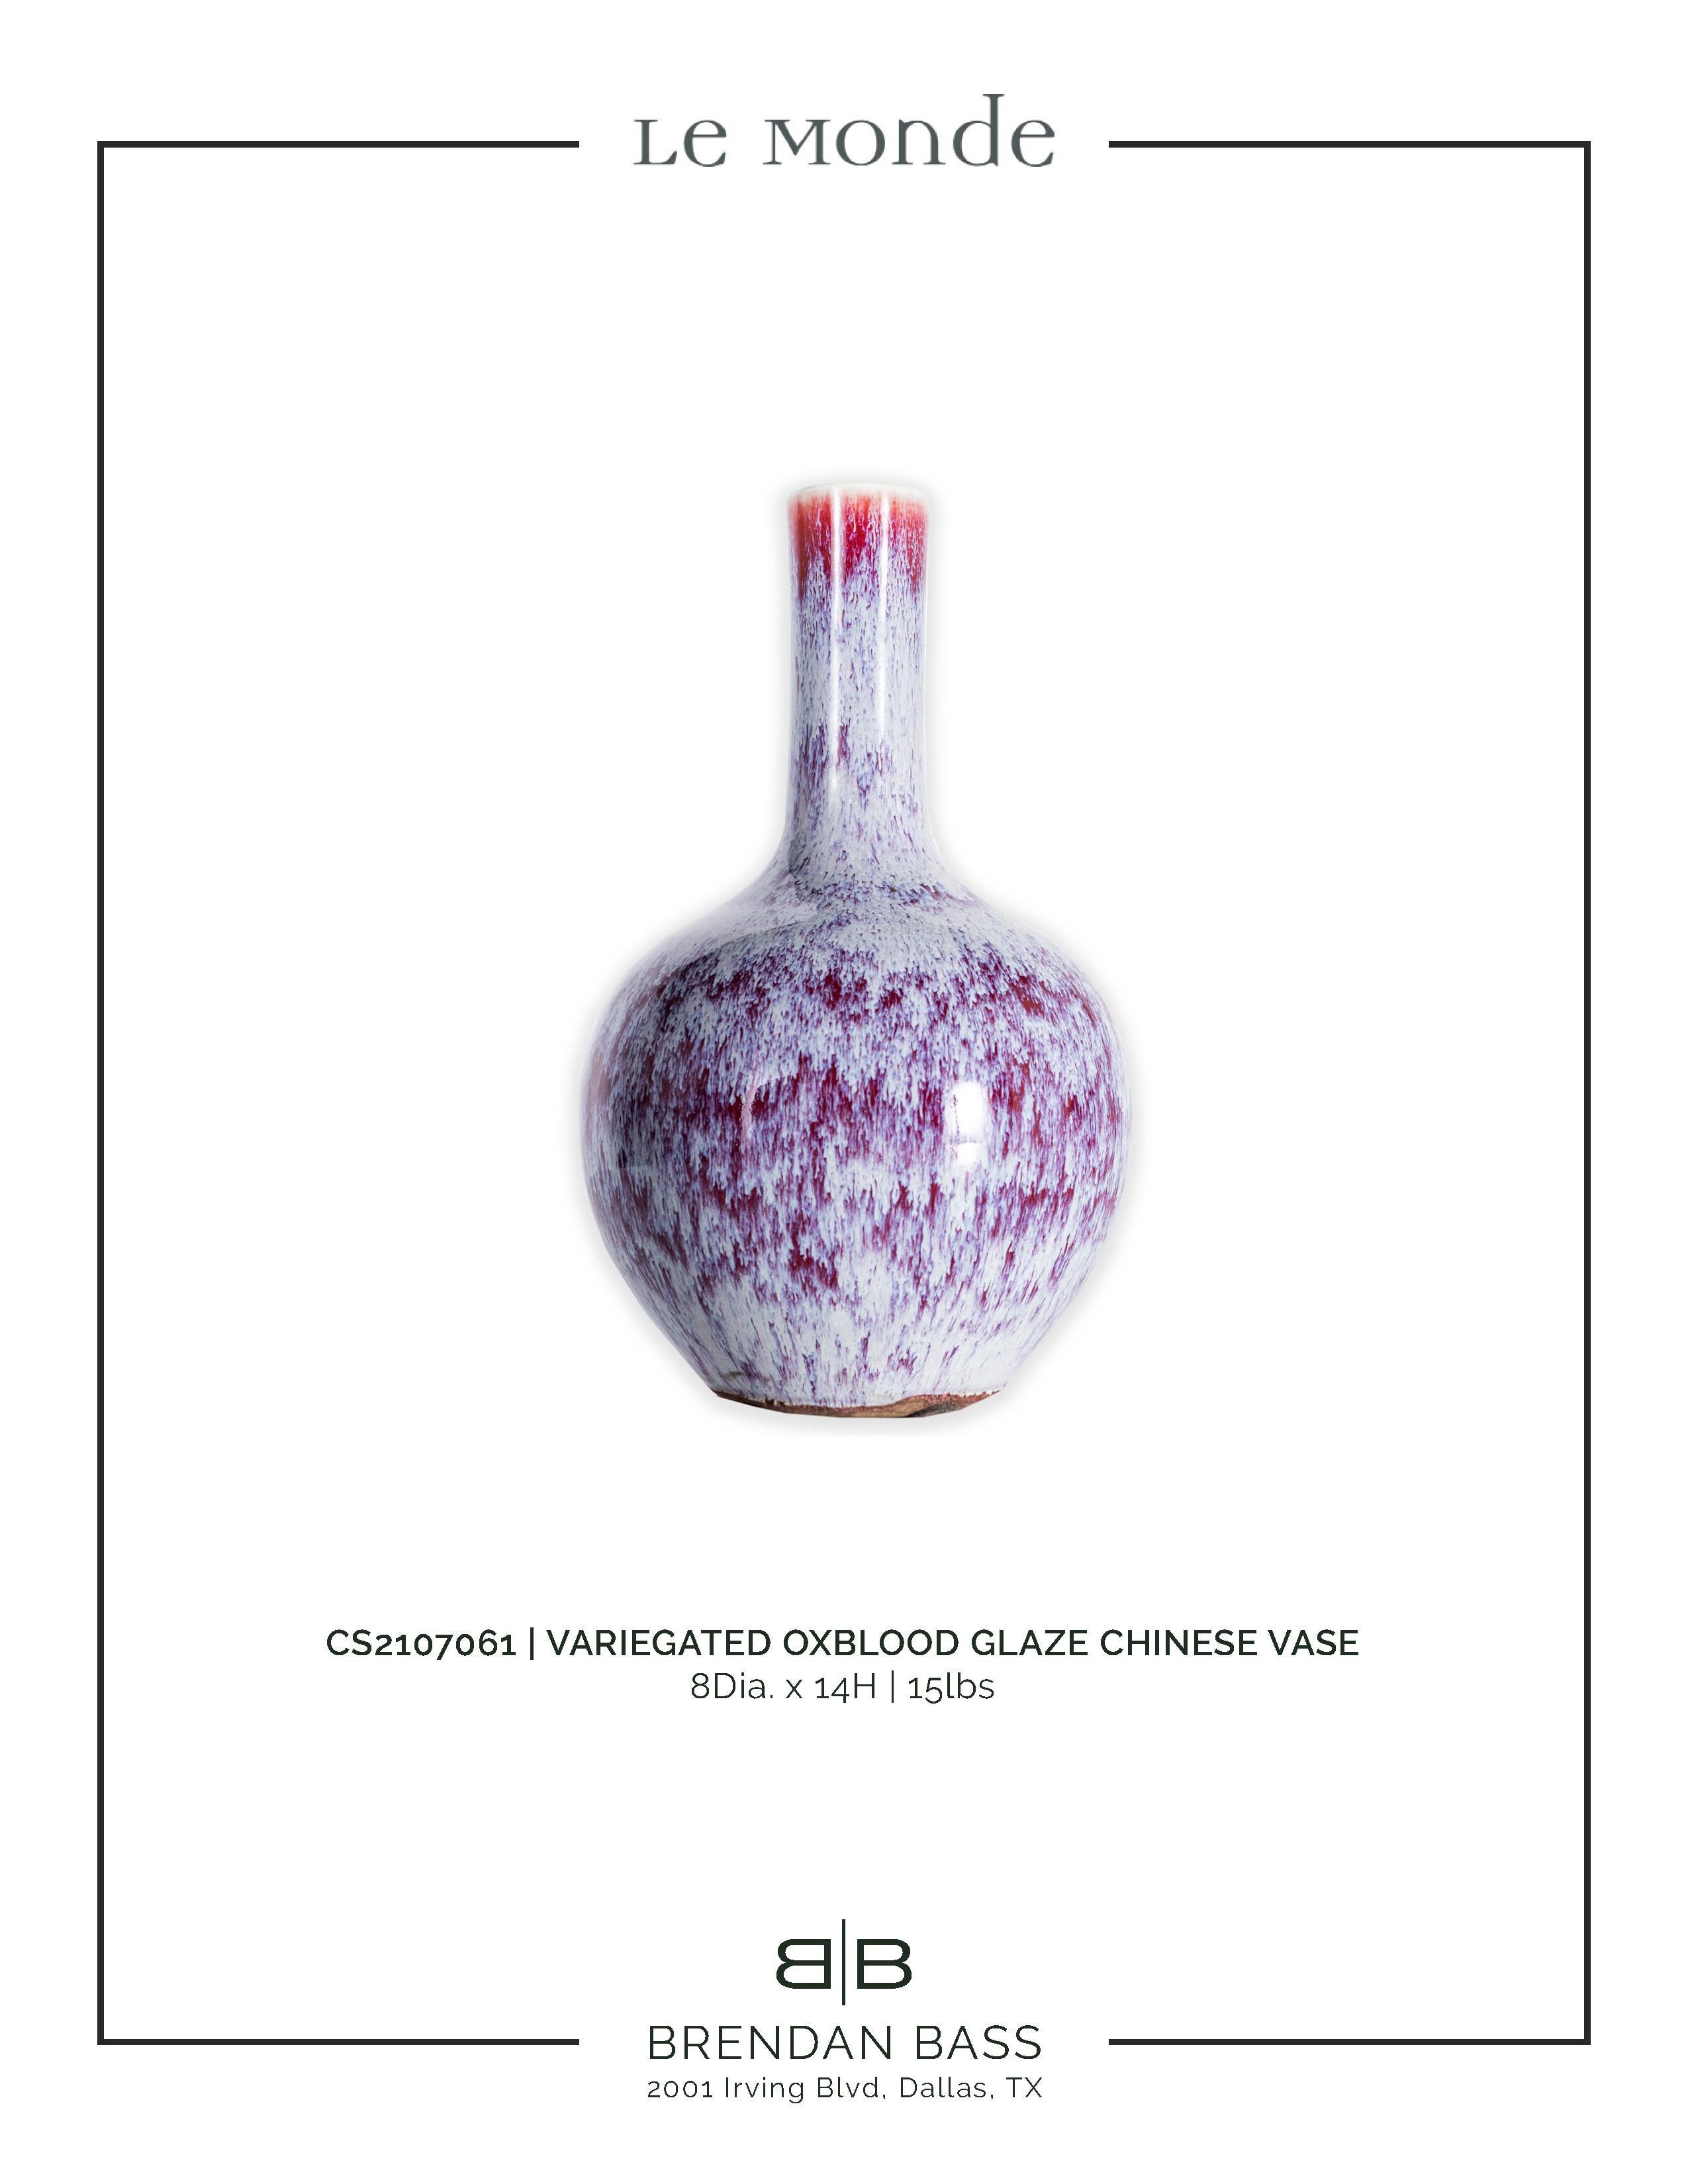 Ceramic Variegated Oxblood Glaze Chinese Vase For Sale